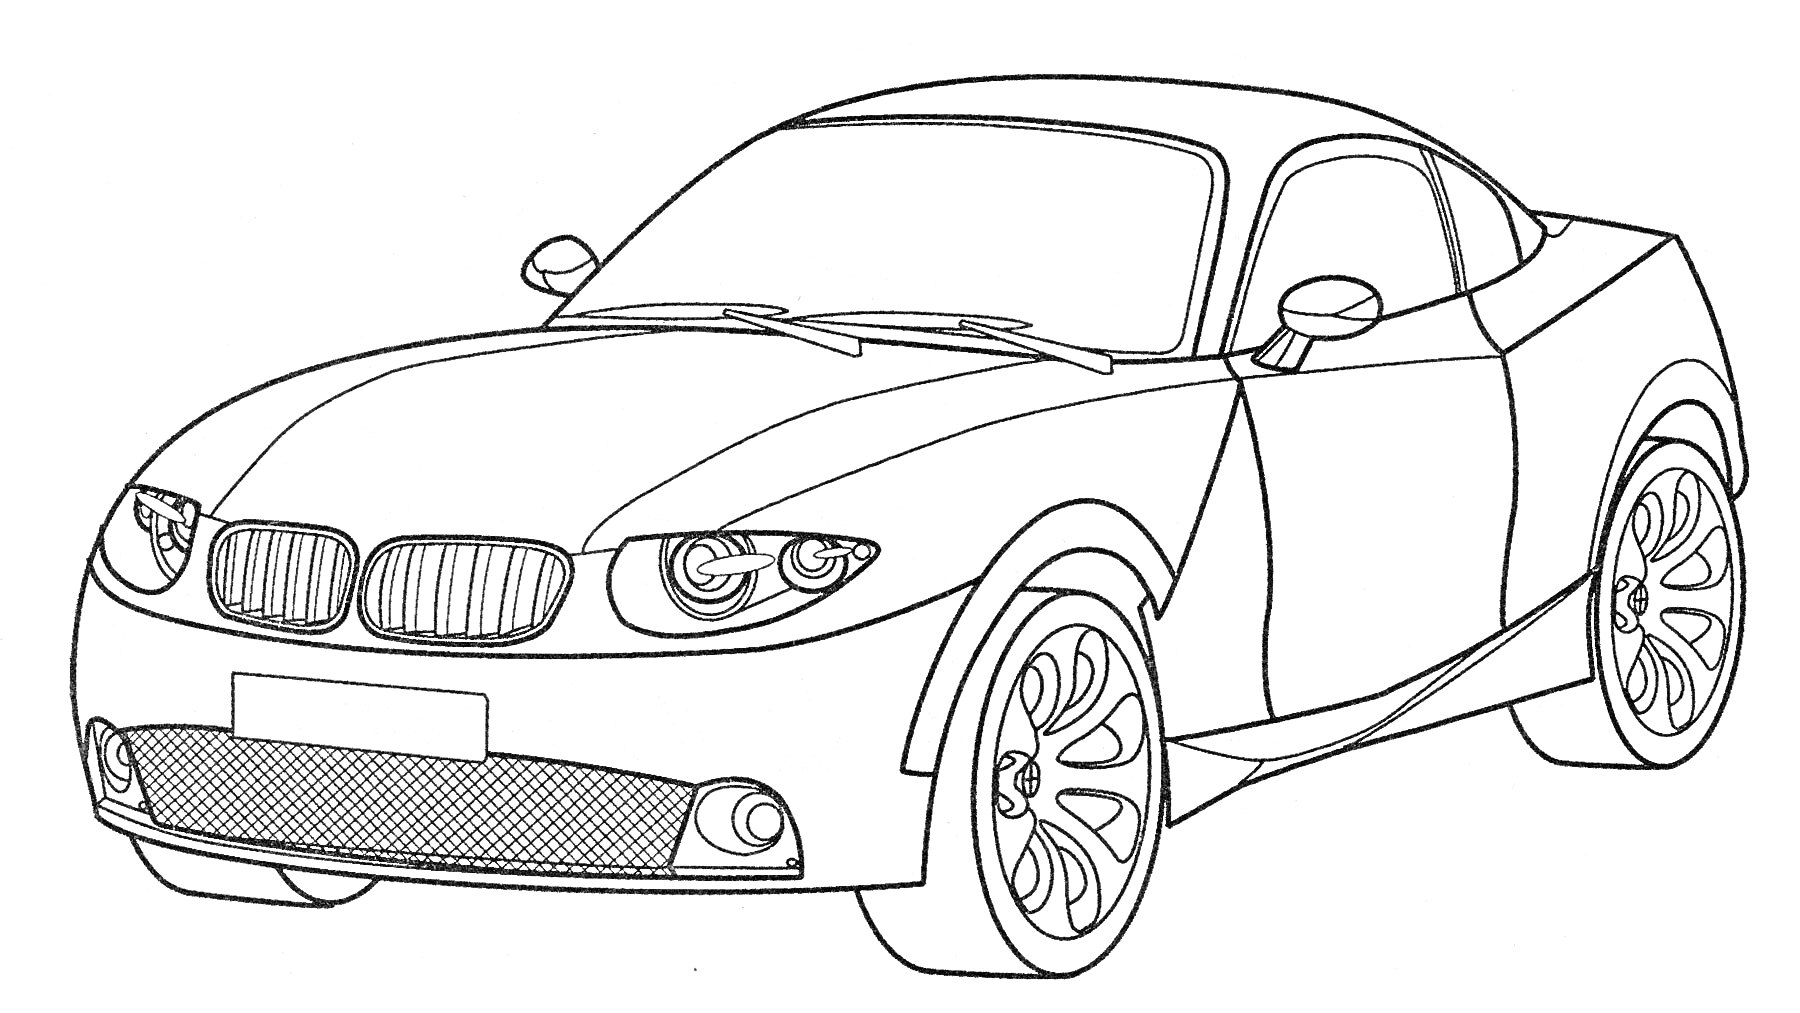 Раскраска BMW автомобиль с рельефными фарами, зеркалами заднего вида, колёсами и двухдверным кузовом